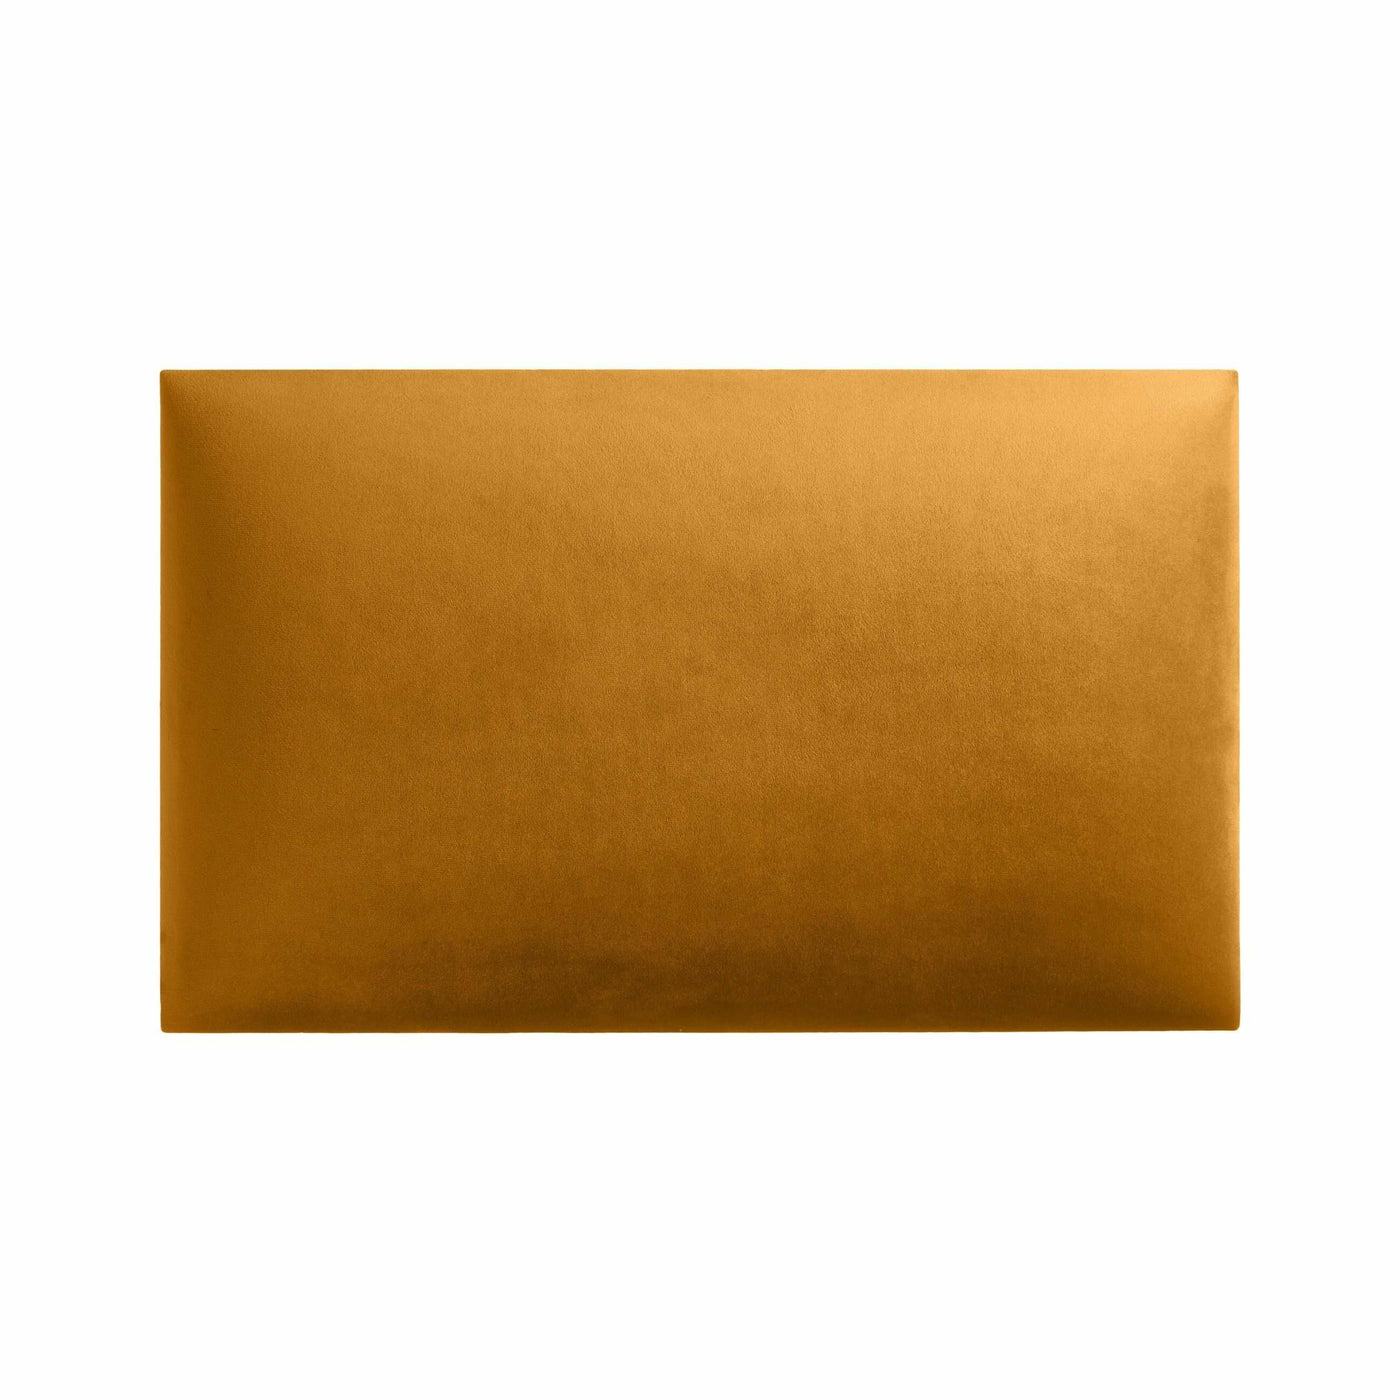 Rechteckiges Wandpolster 50x30 aus Riviera Samt Stoff in der Farbe Gold-Gelb RV41